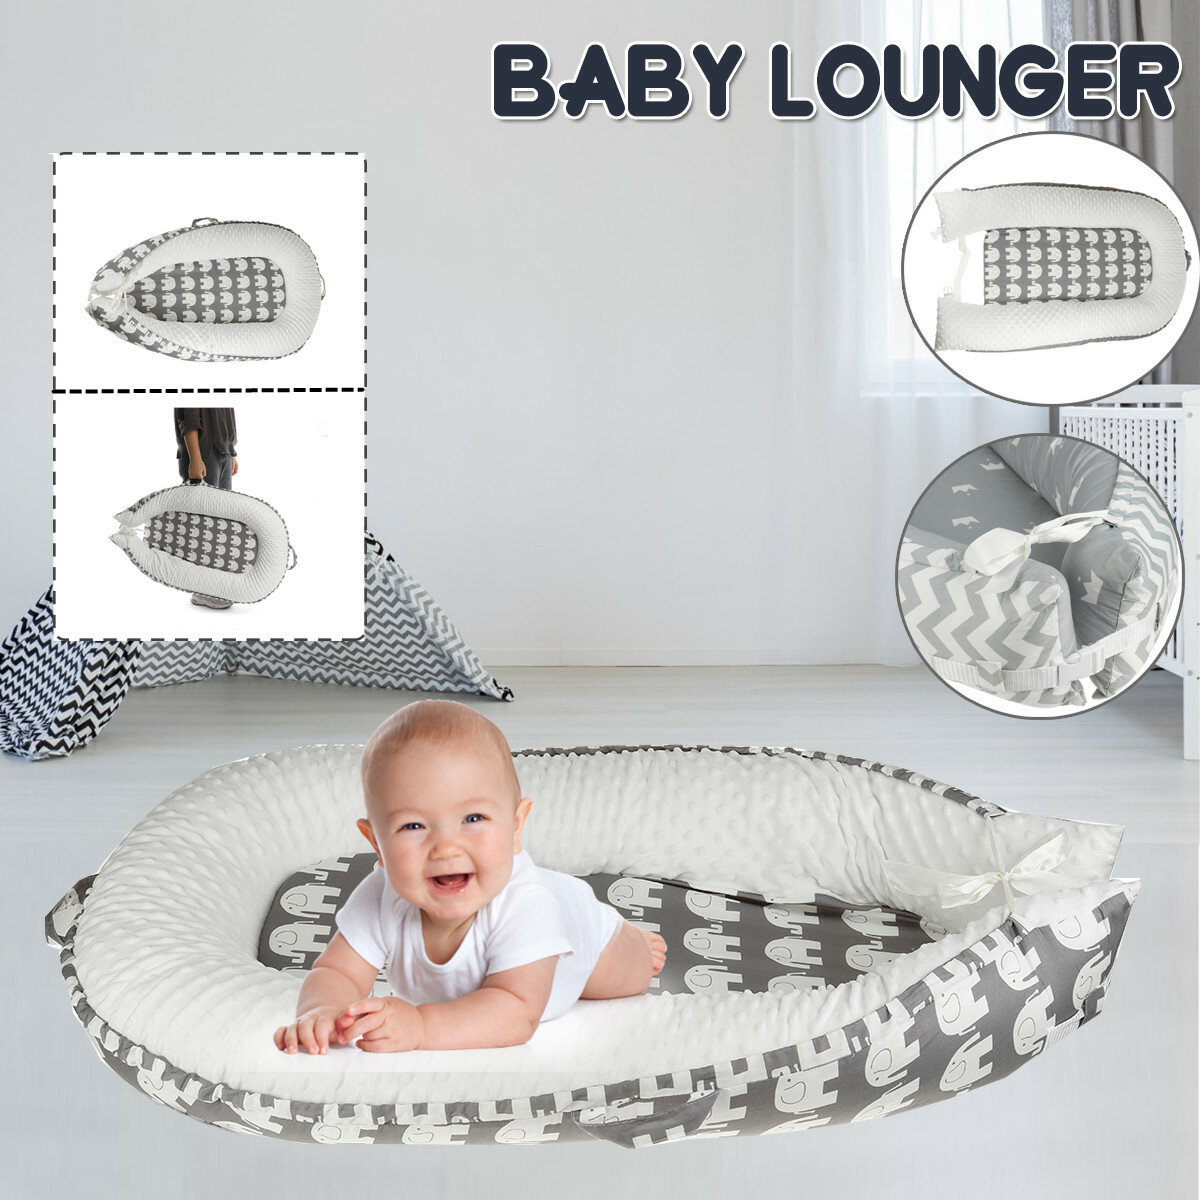 Infant Zacht Nieuwgeboren Baby Kussen Kussen Lounger Pod Cot Bed Slaapmatras